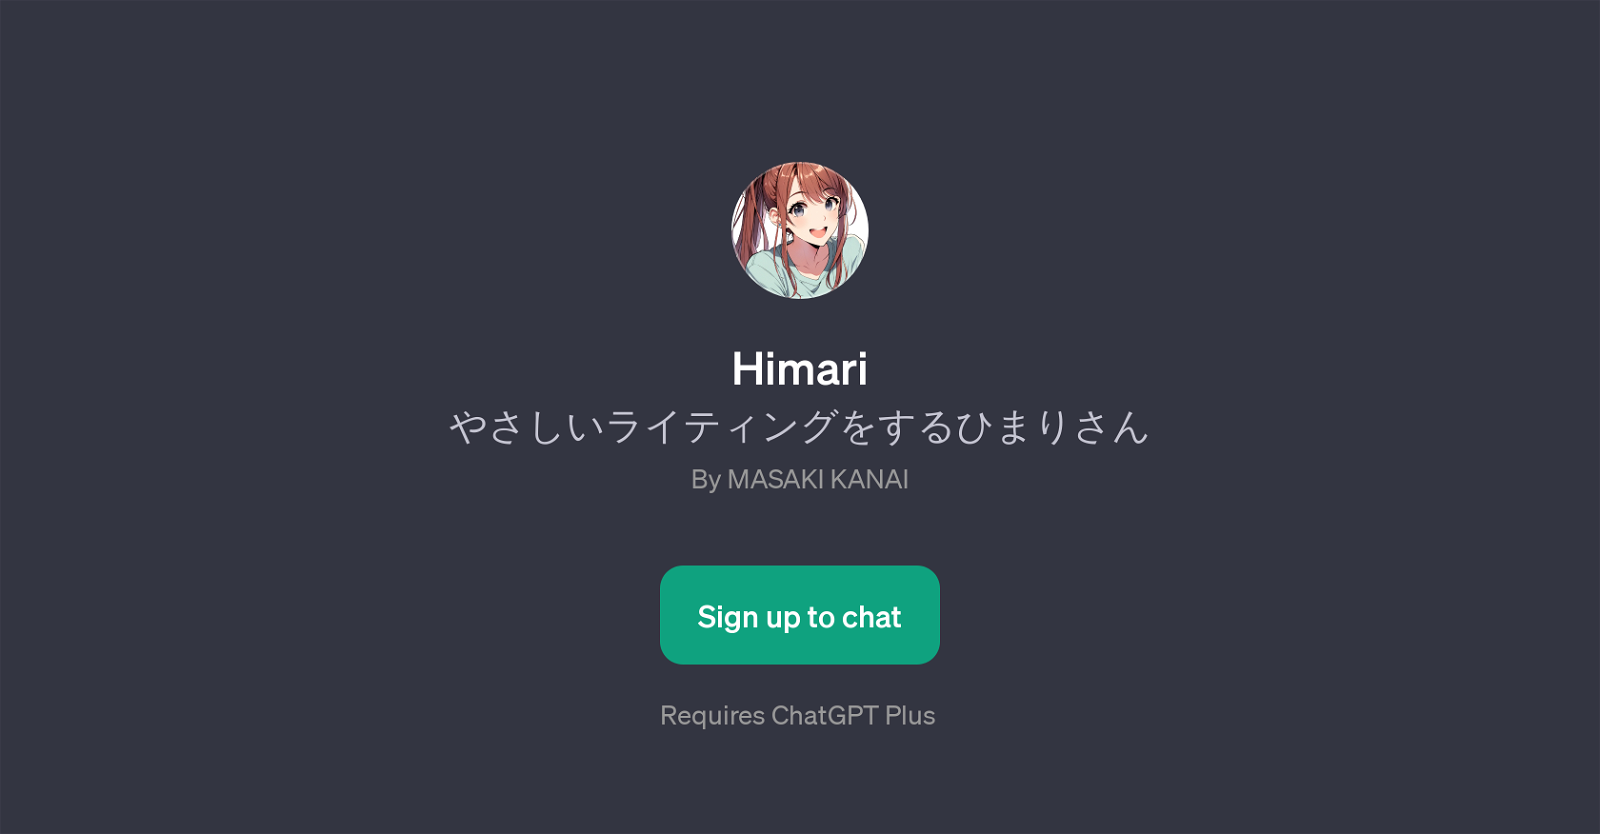 Himari website